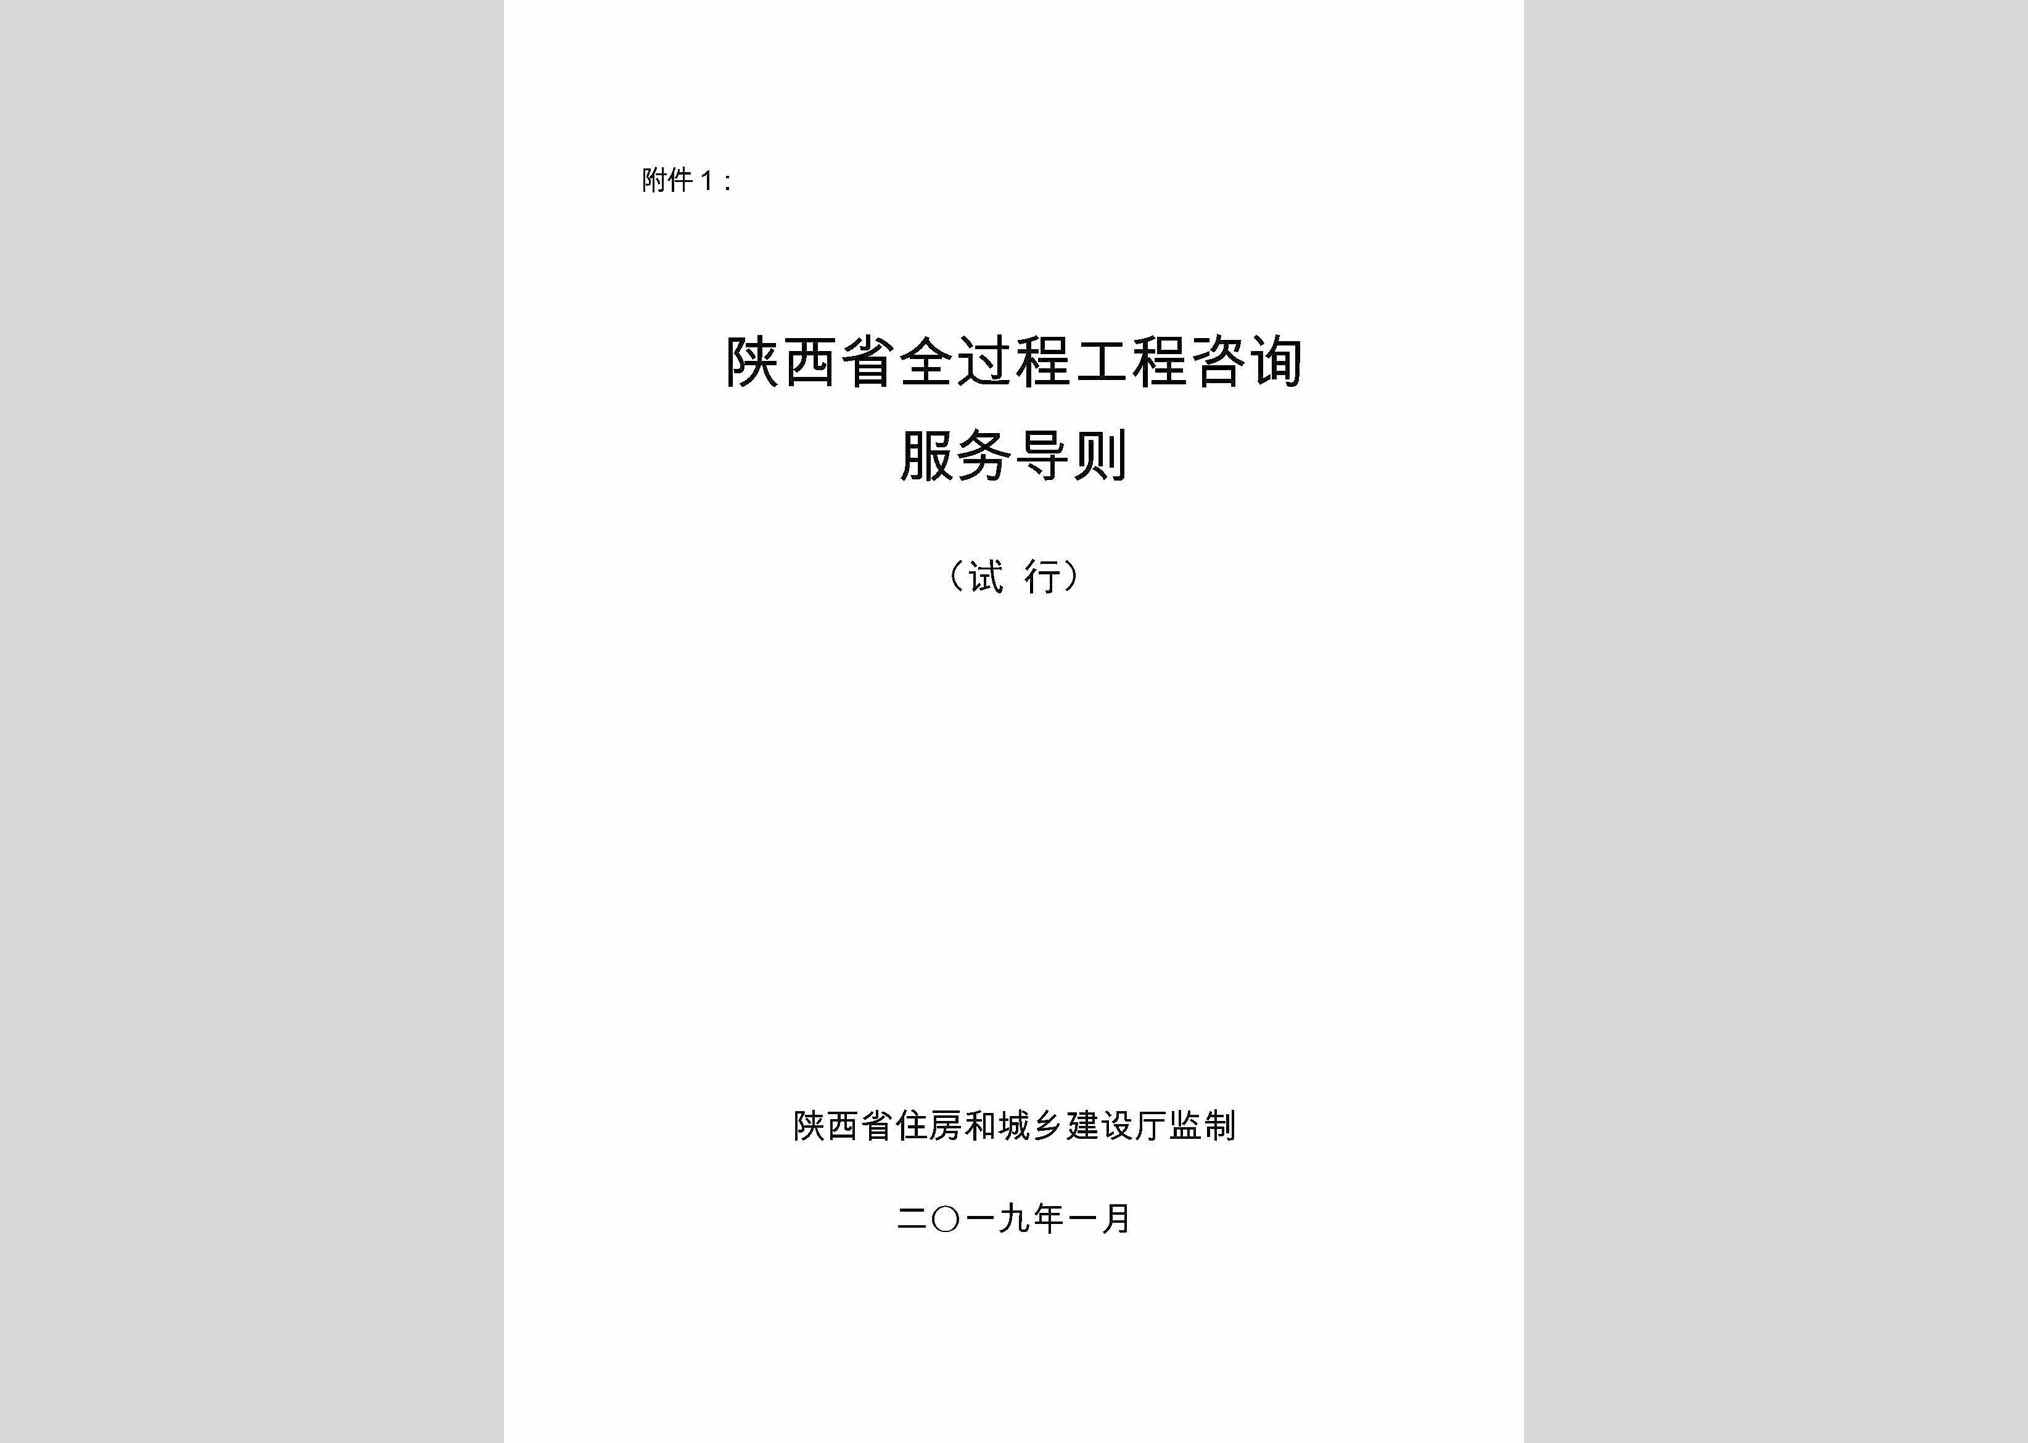 SXGCZXFW：陕西省全过程工程咨询服务导则(试行)